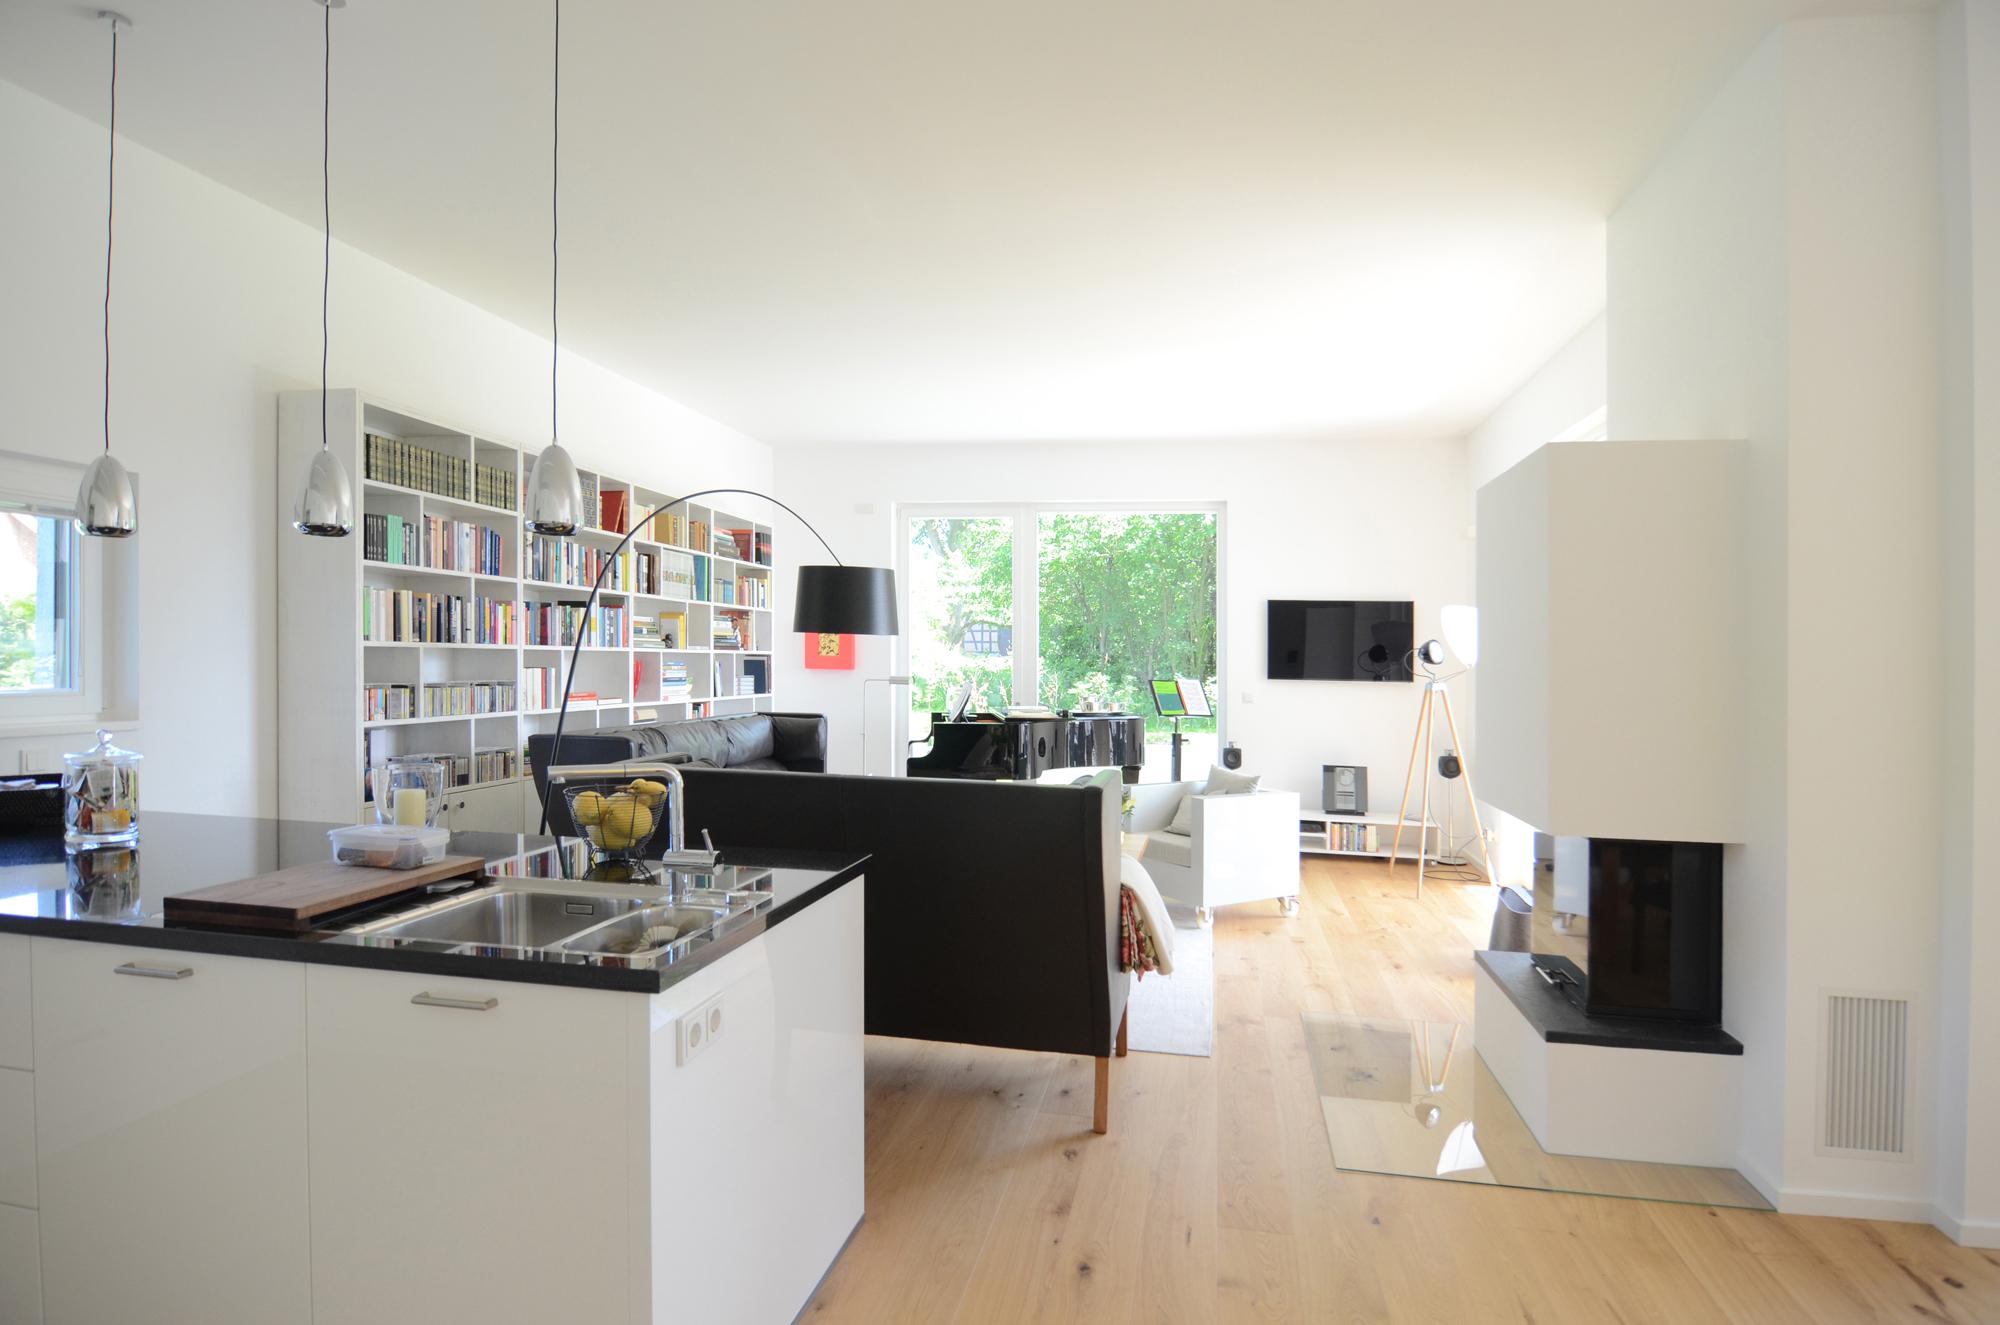 Wohnzimmer mit Küche und Kamin #küche #wohnzimmer ©Frank Püffel